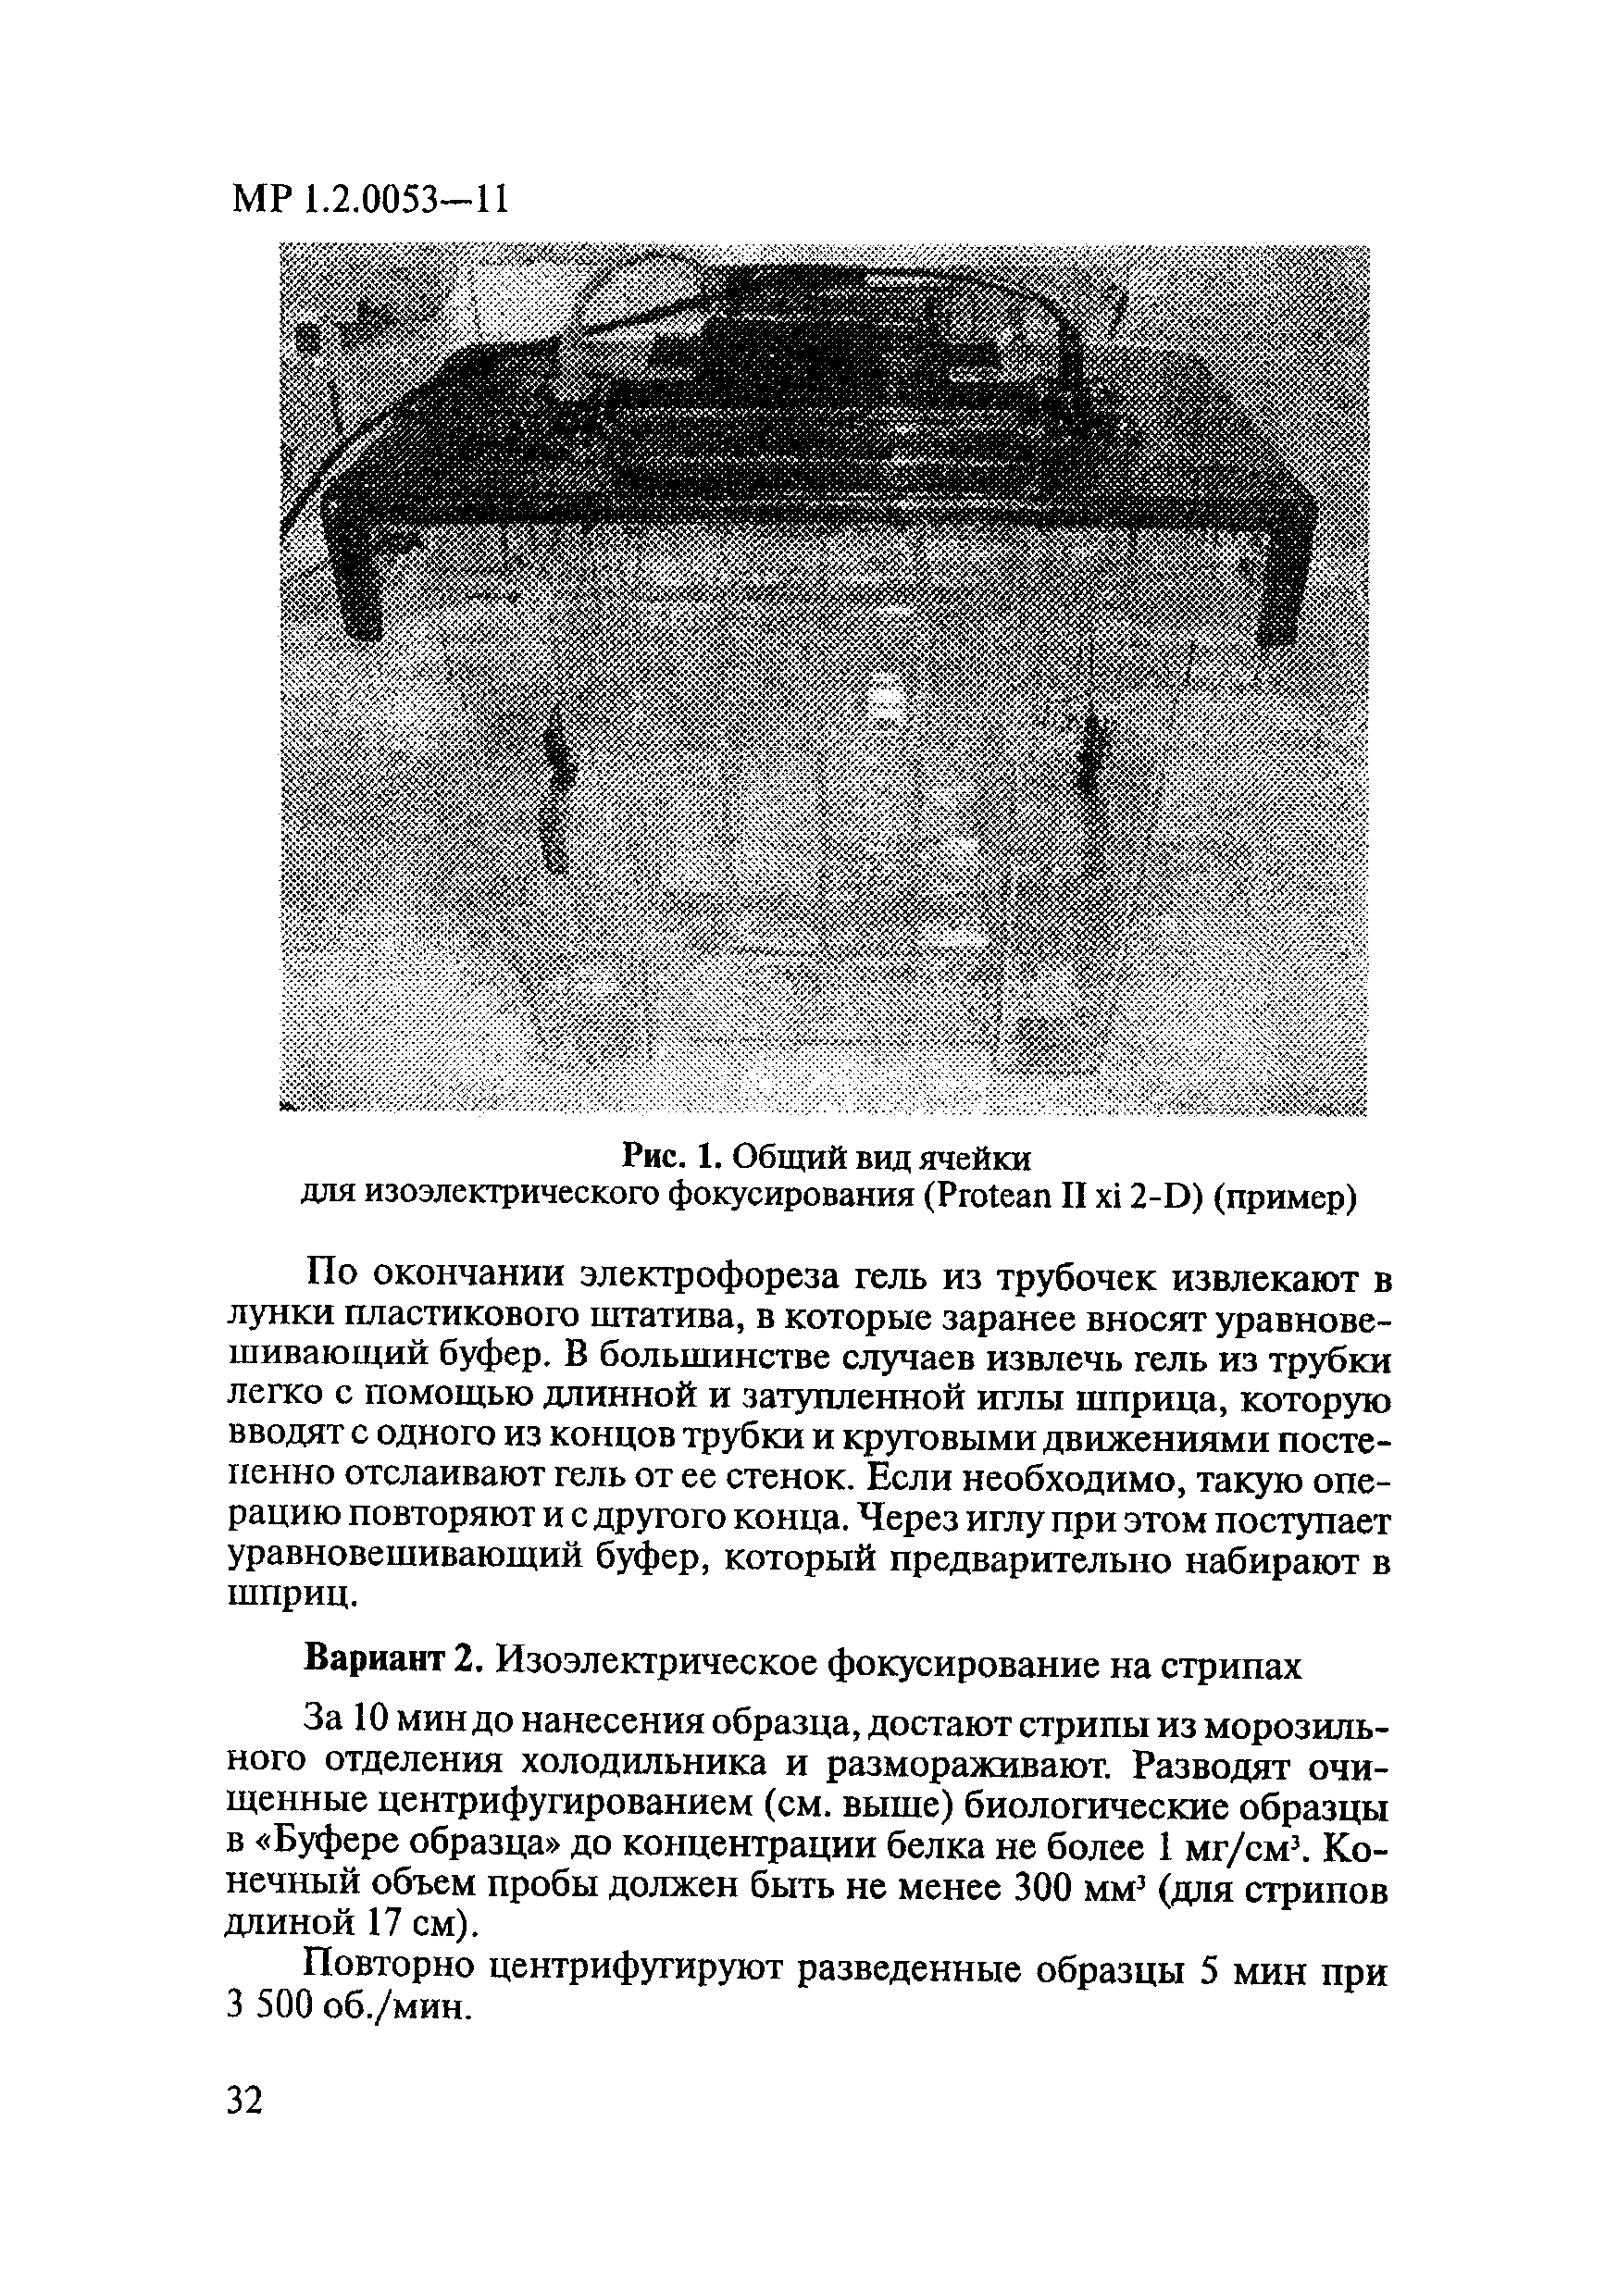 МР 1.2.0053-11